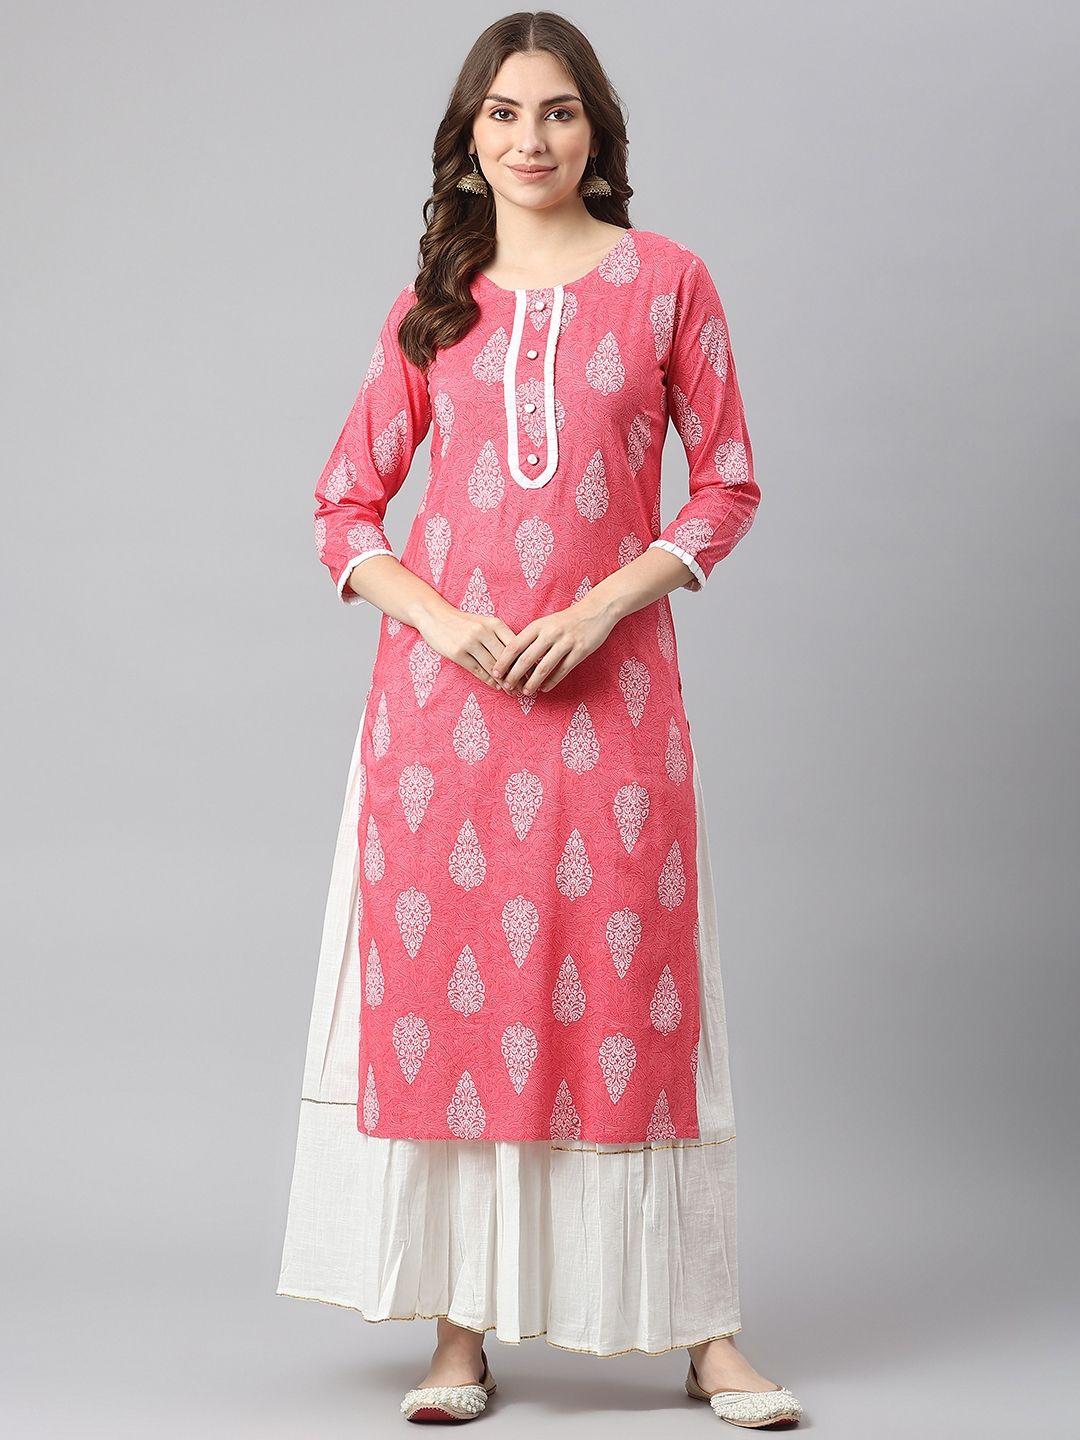 kalini women pink ethnic motifs printed kurta with skirt